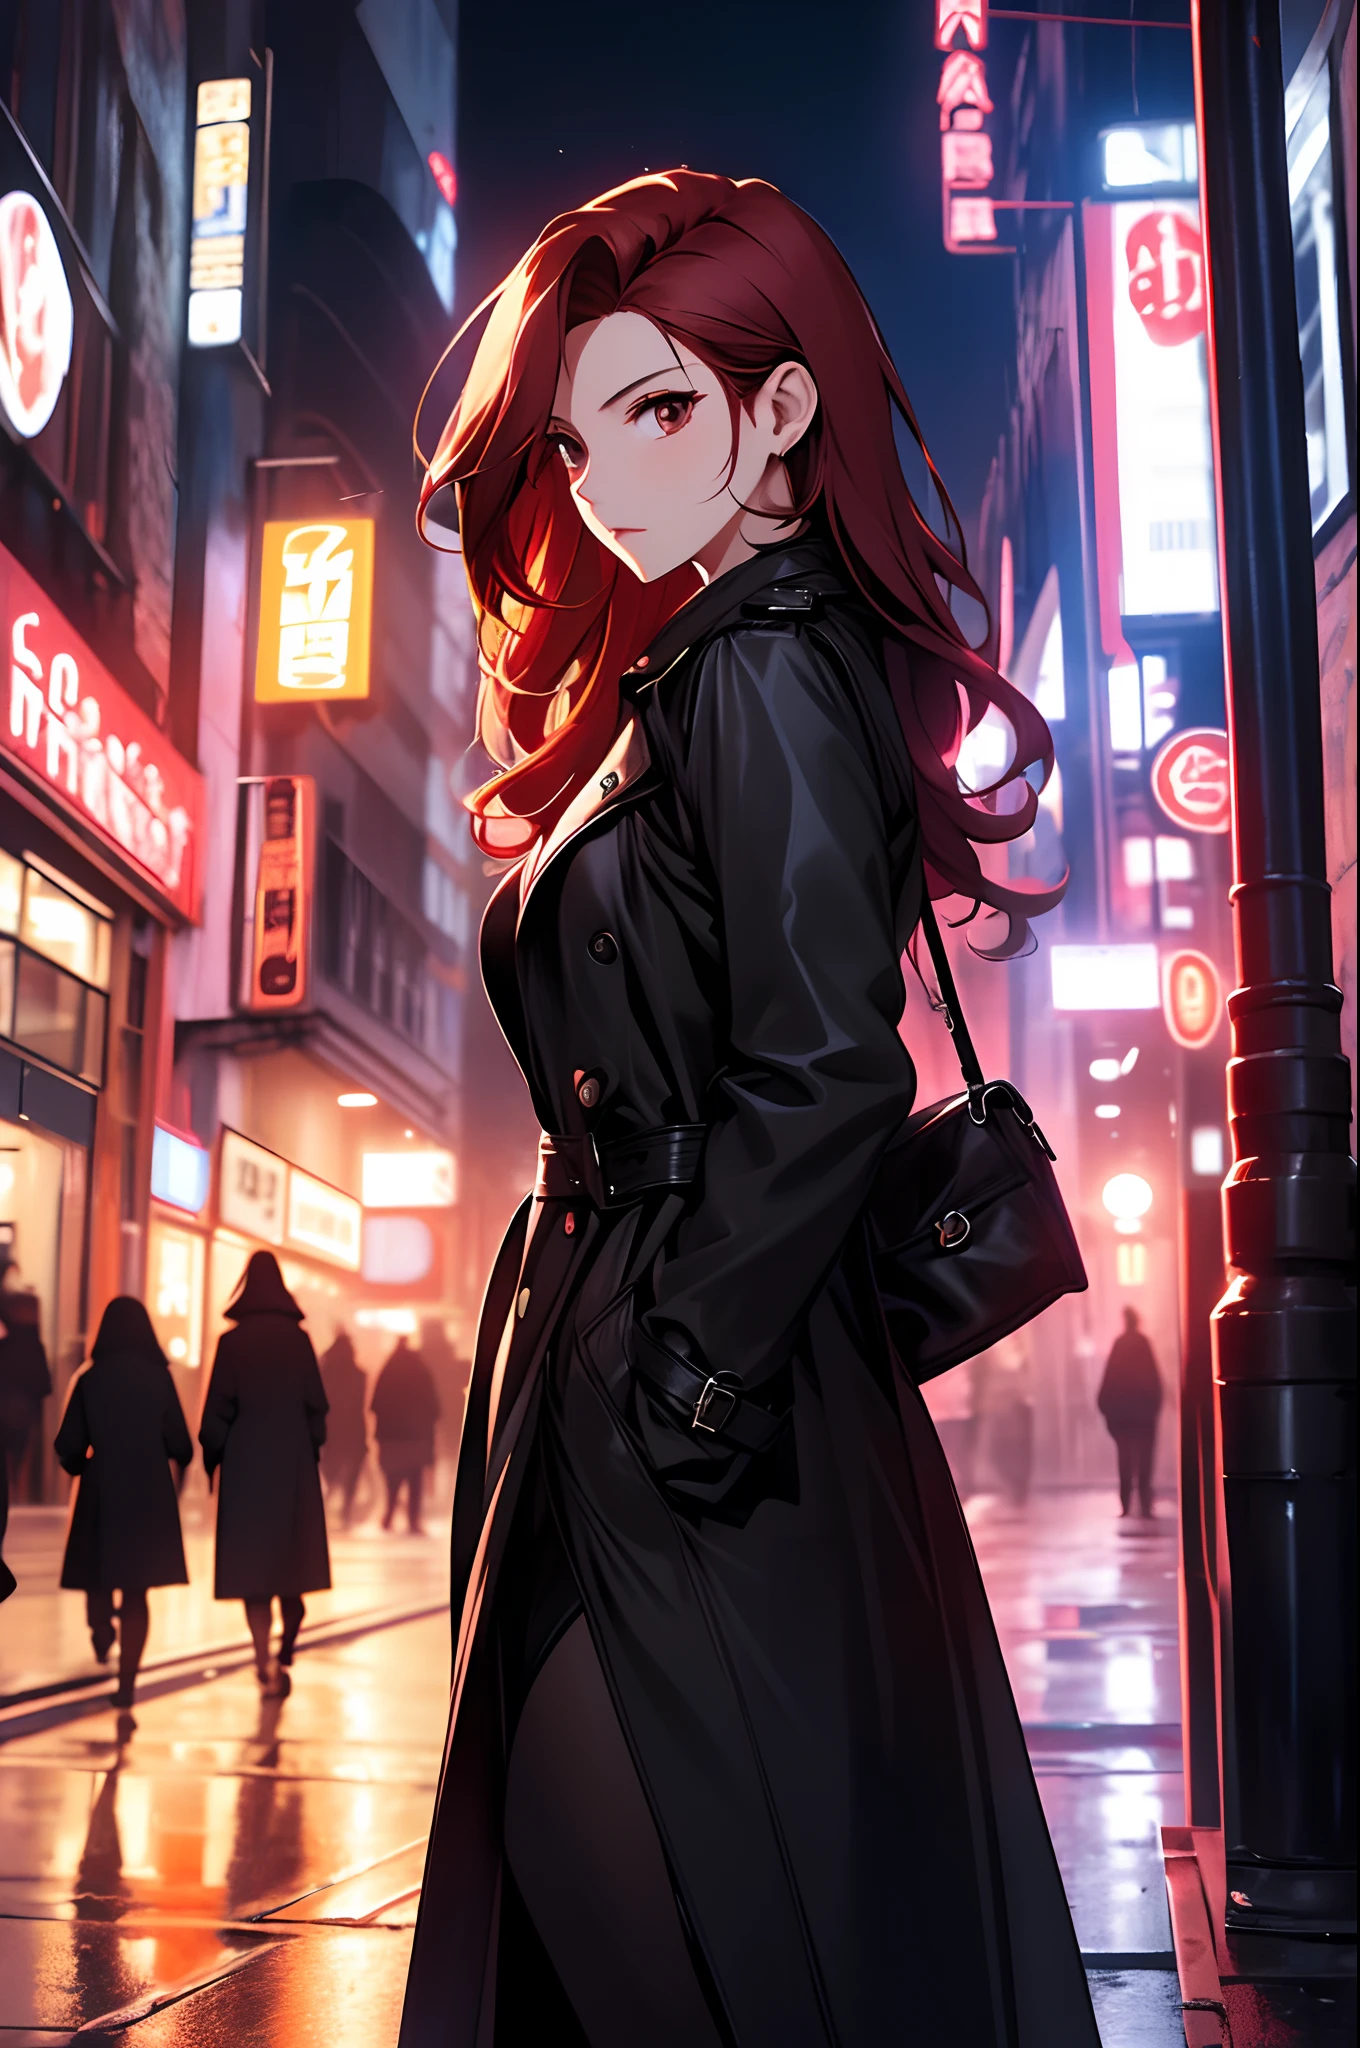 a noite，A beautiful woman wandering a ruas，a rua，Use um sobretudo preto，saia de couro，cabelos ruivos longos，A melhor composição，anime，（（Fotografia com câmera de ângulo dinâmico））），poses dinâmicas，